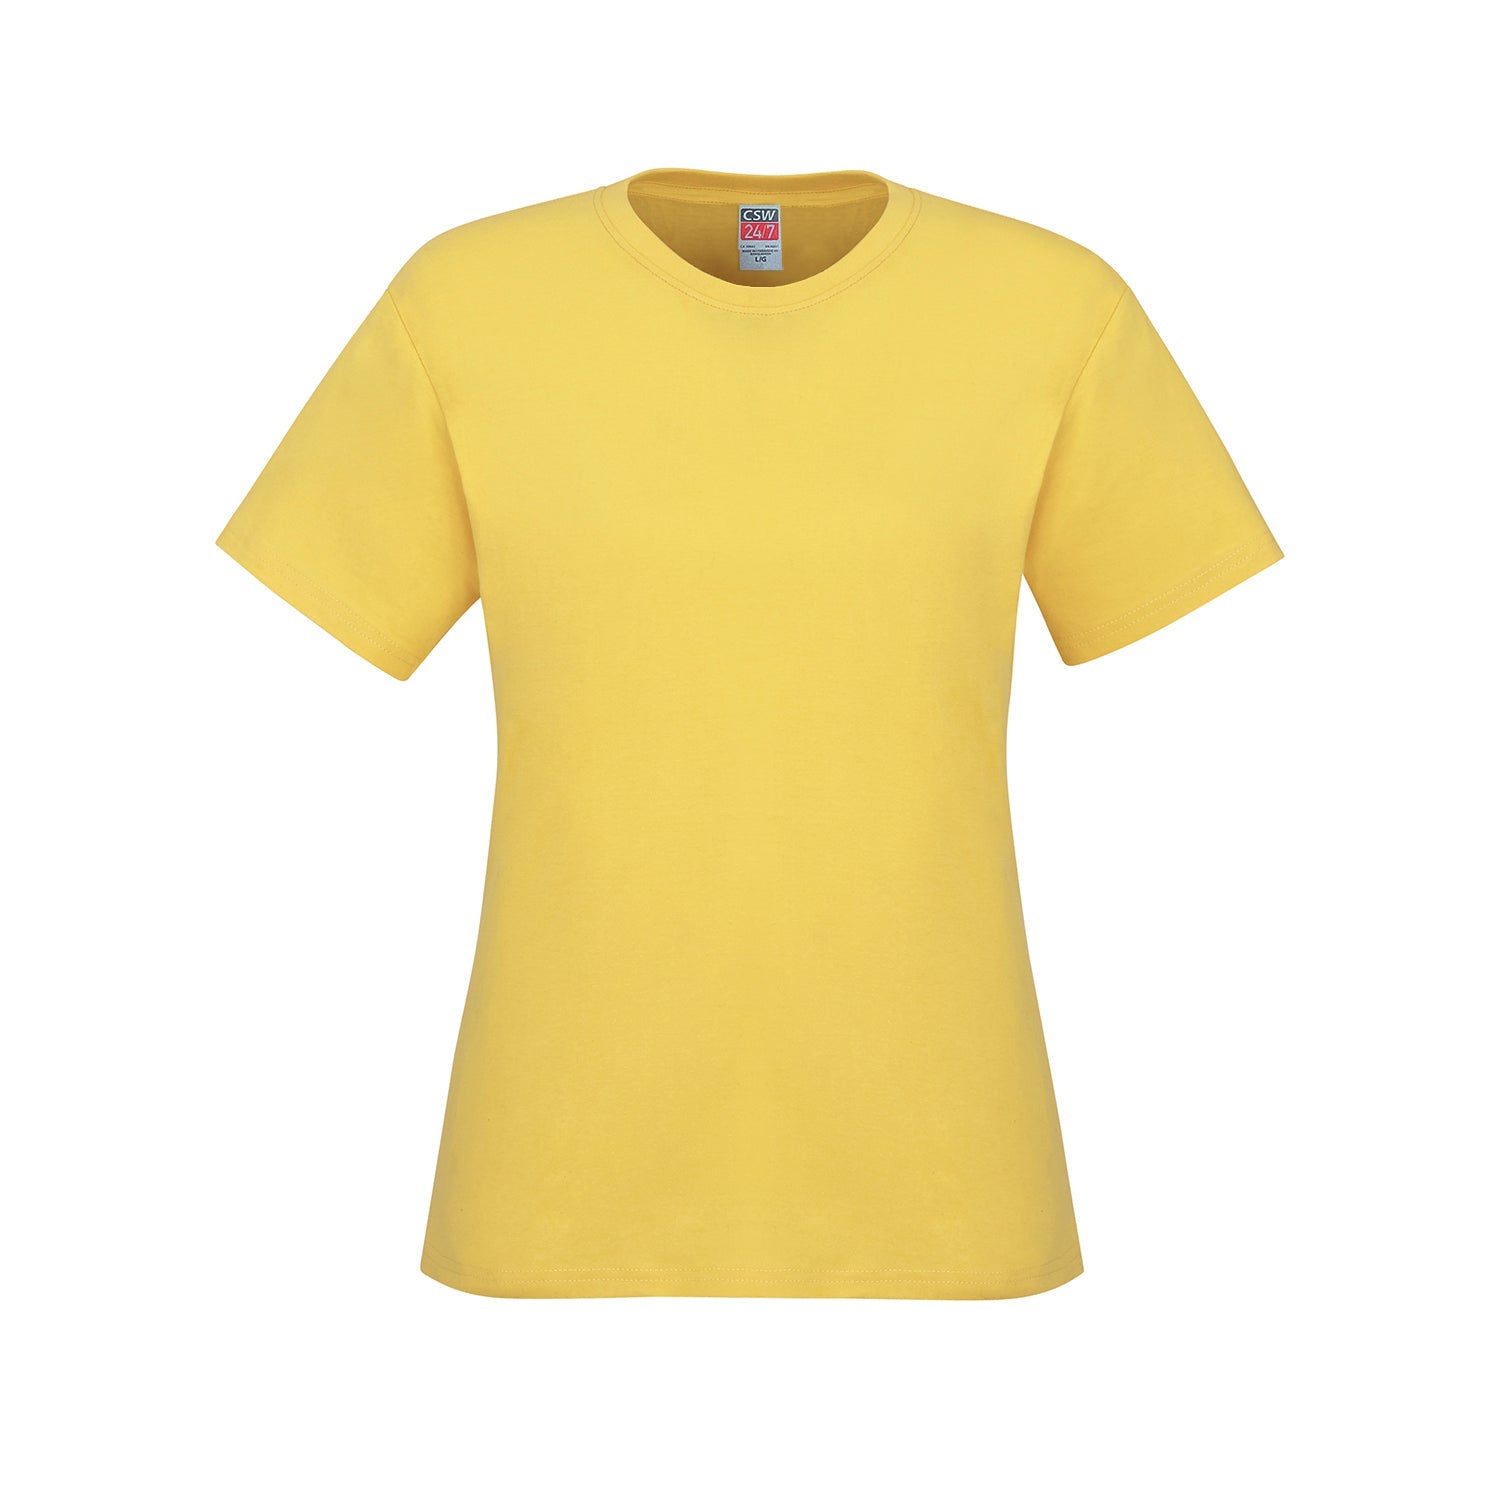 S05611 - Parkour - Ladies Crew Neck Cotton T-Shirt - Yellow